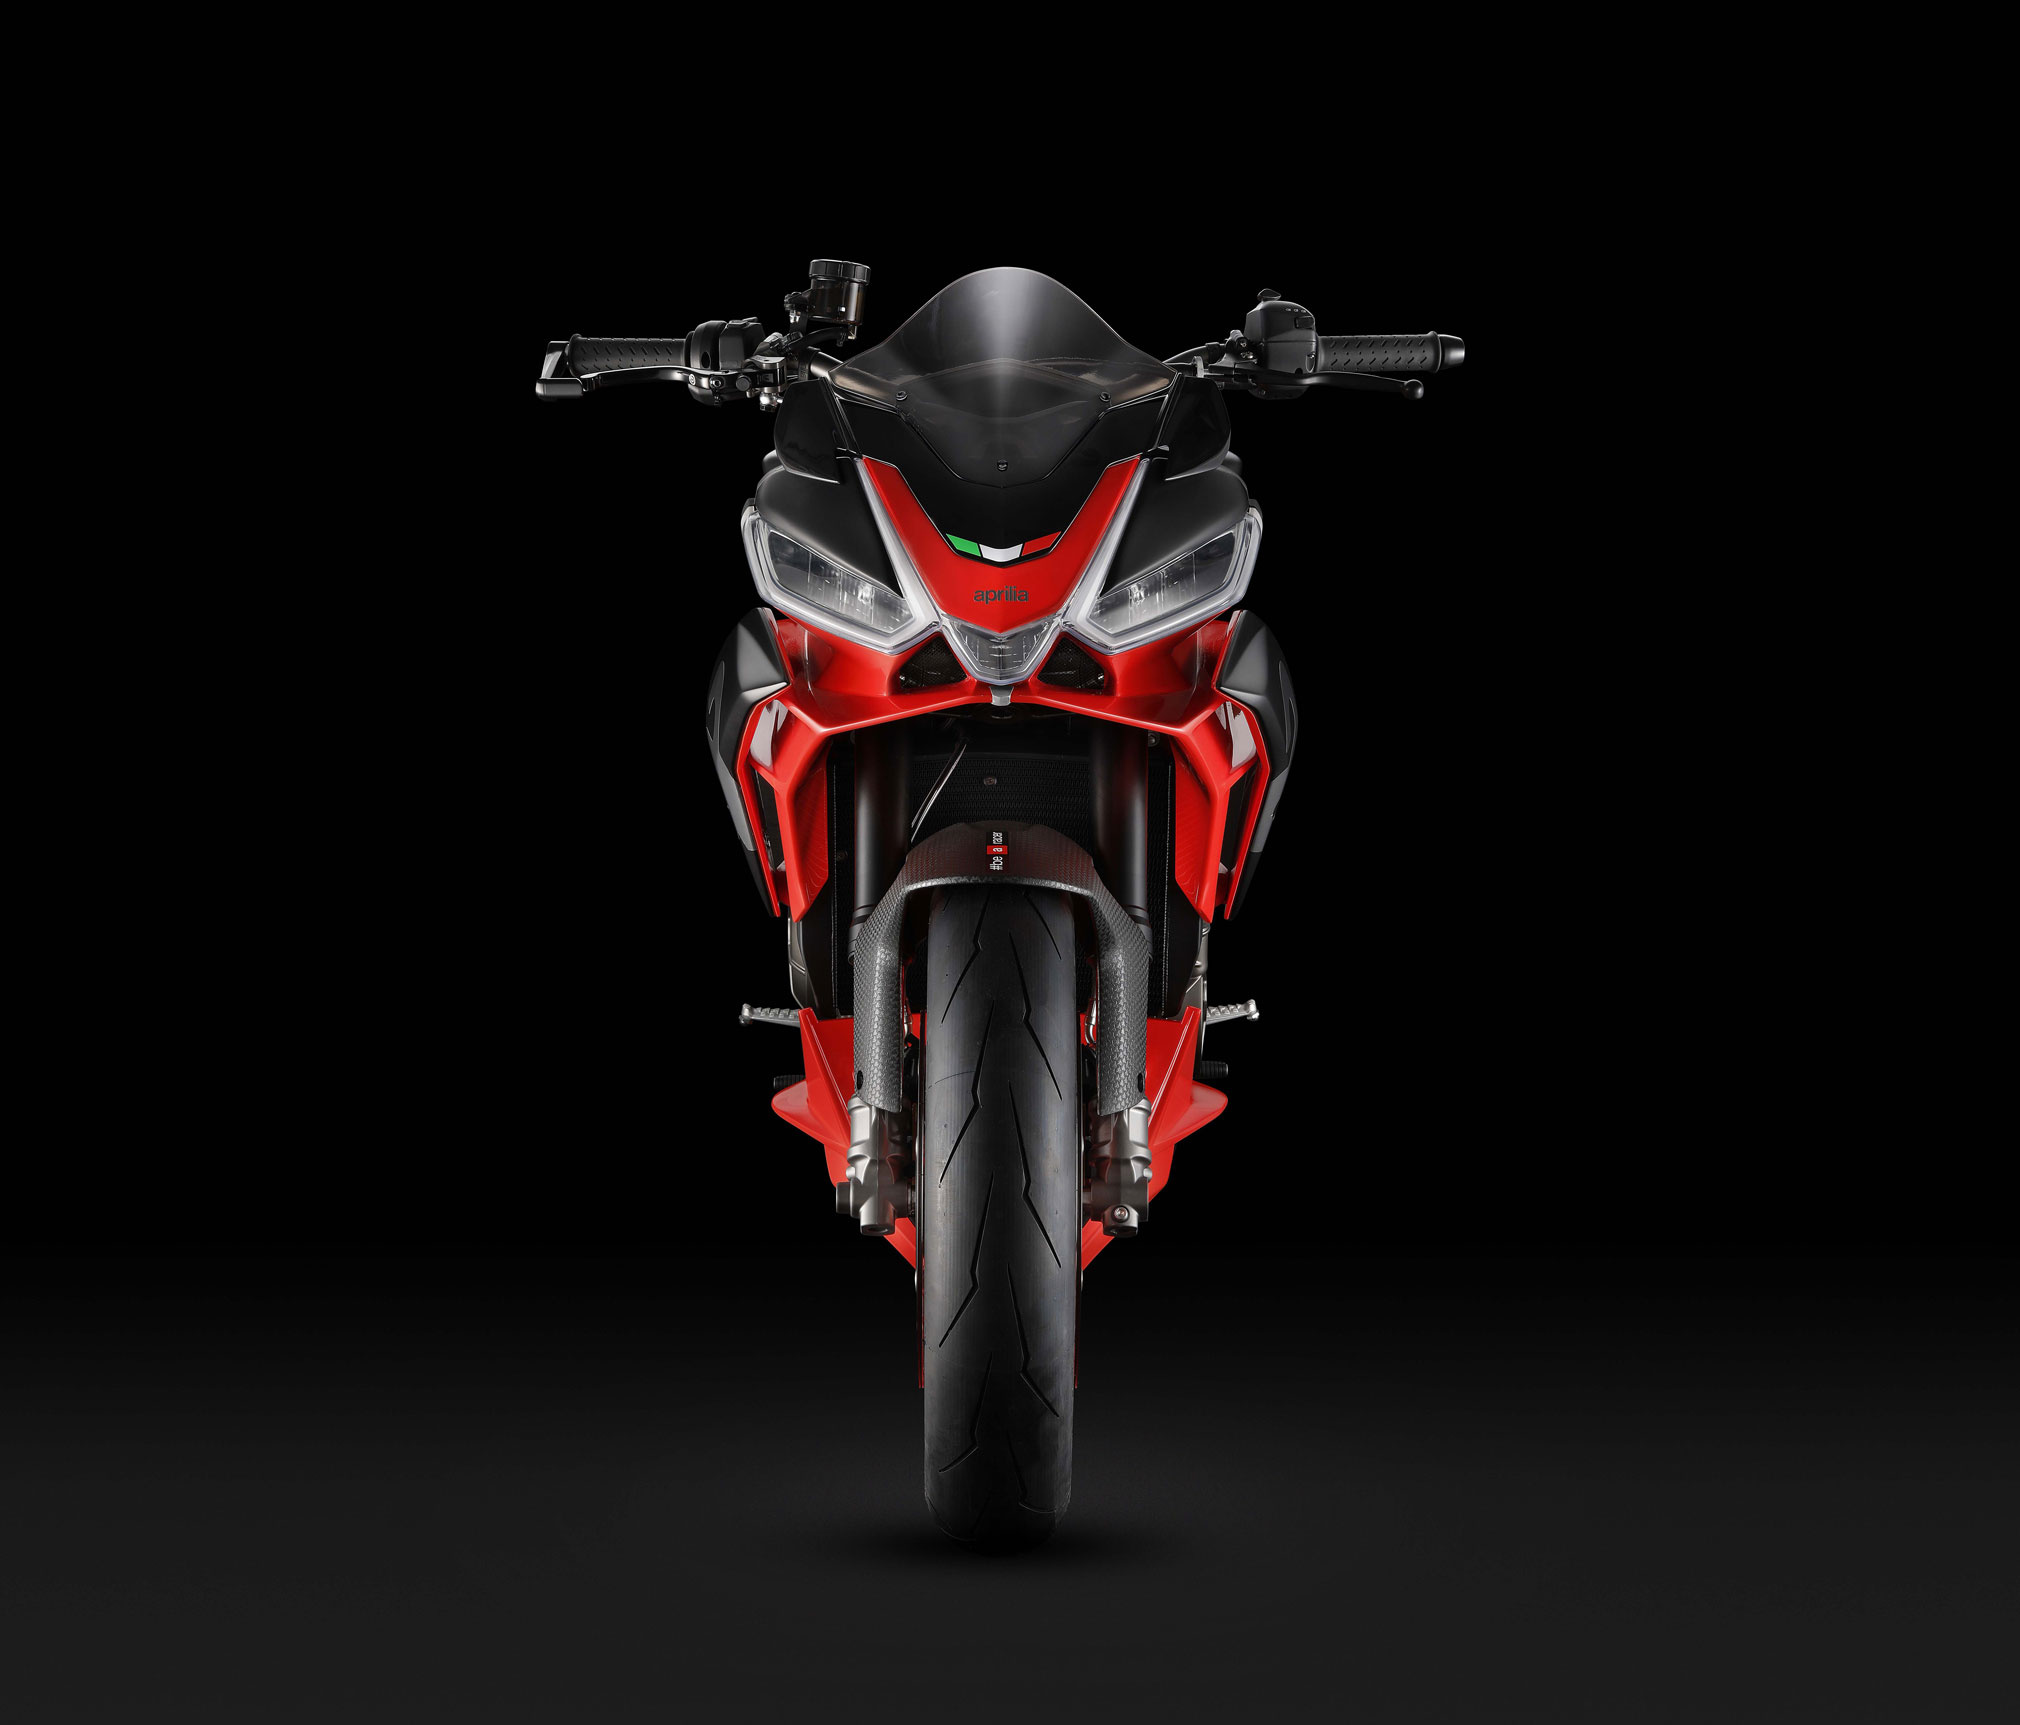 Aprilia Tuono 660, Aprilia concept guide, Total motorcycle, 2020x1730 HD Desktop